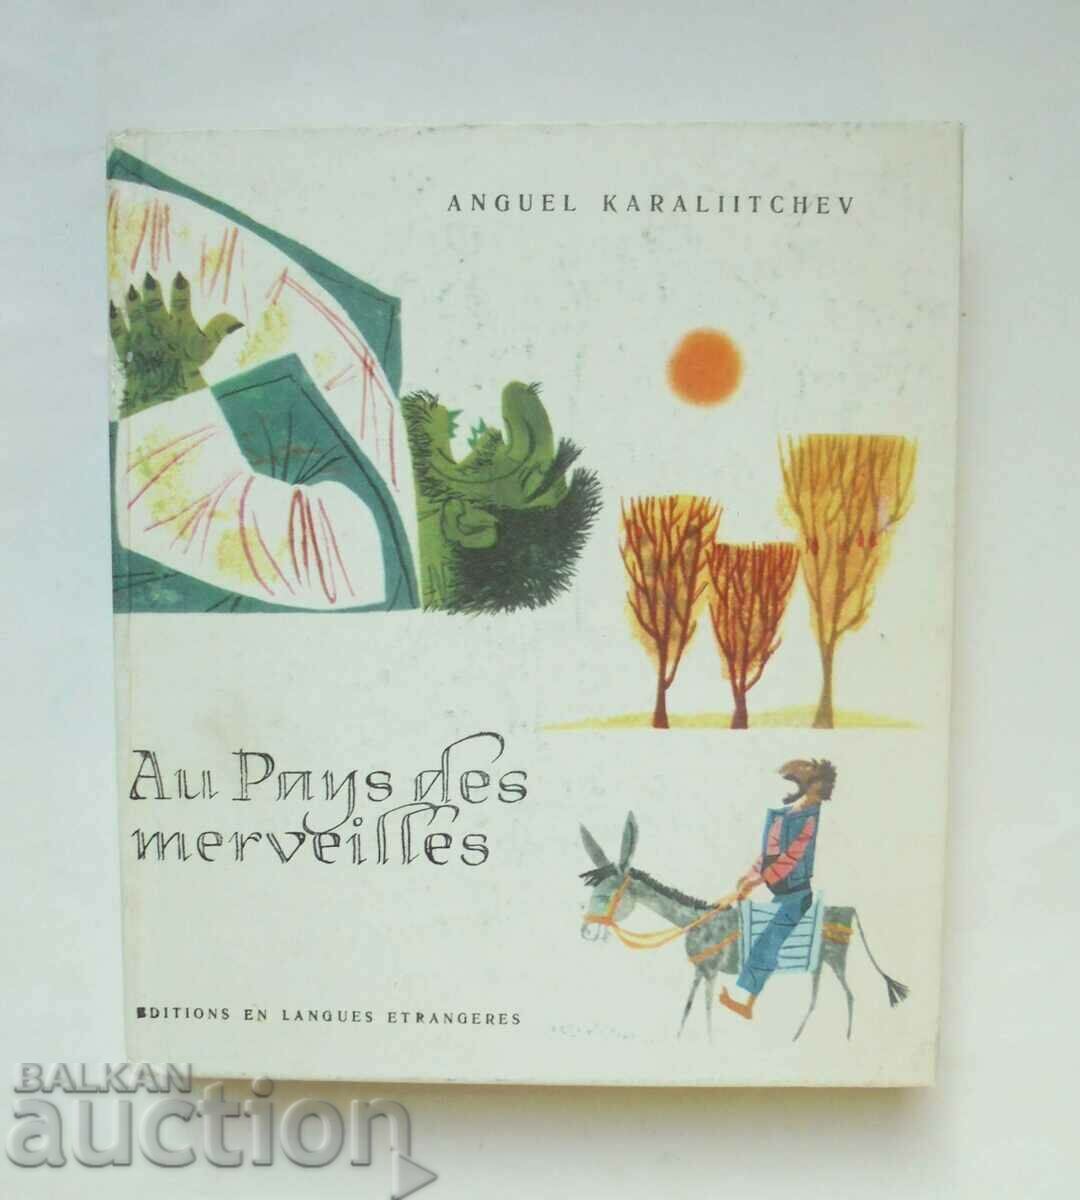 Au Pays des marveilles - Anguel Karaliitchev 1965 г.